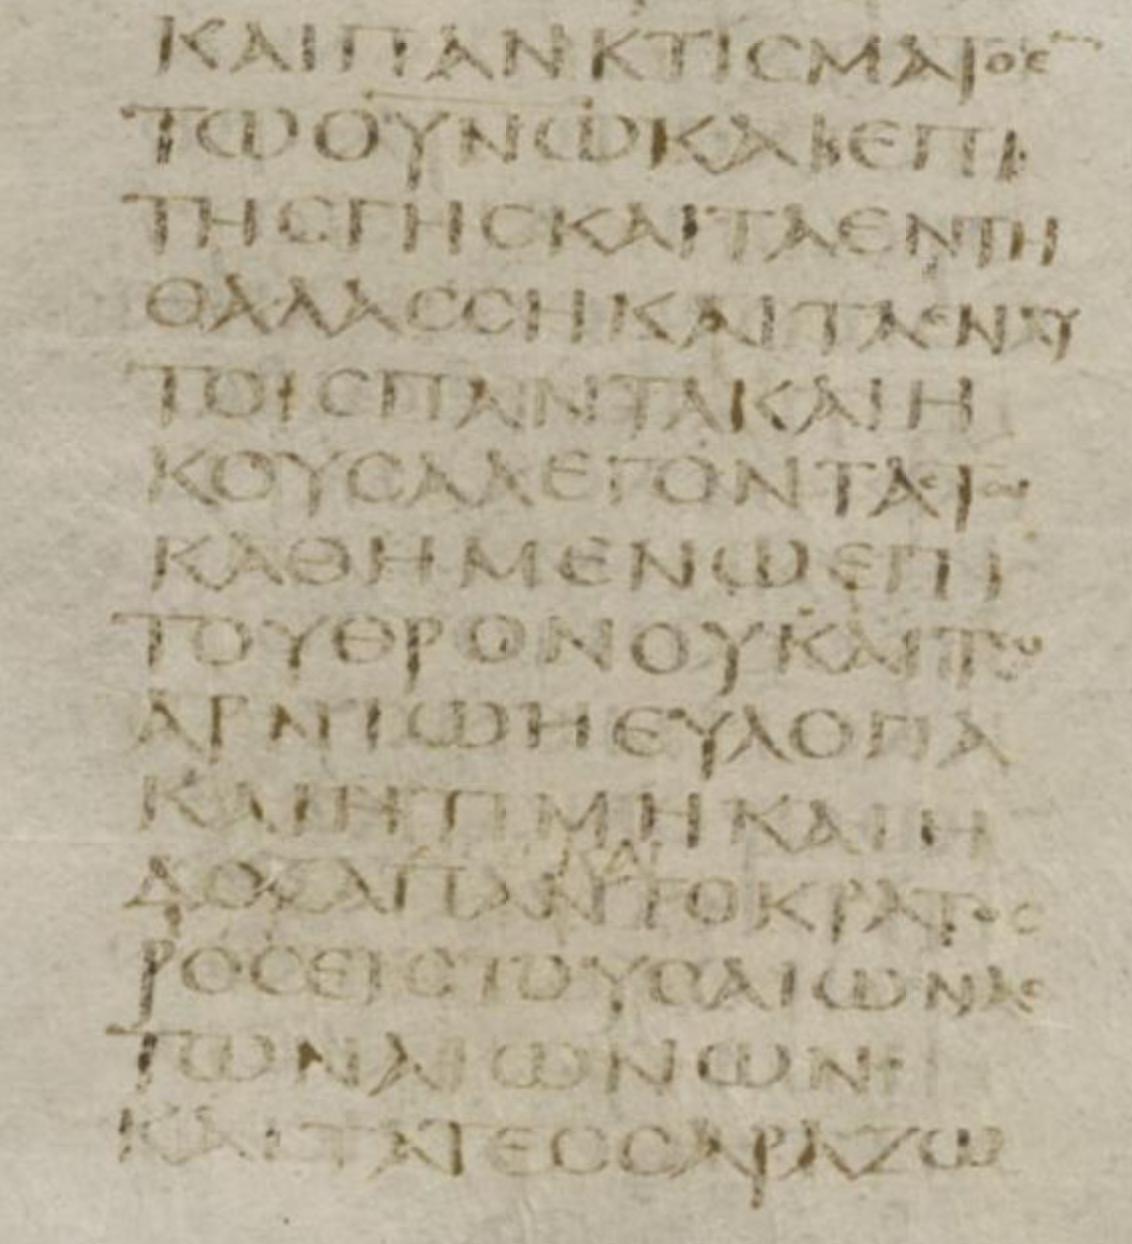 PNG rev 5:13 codex sinaiticus